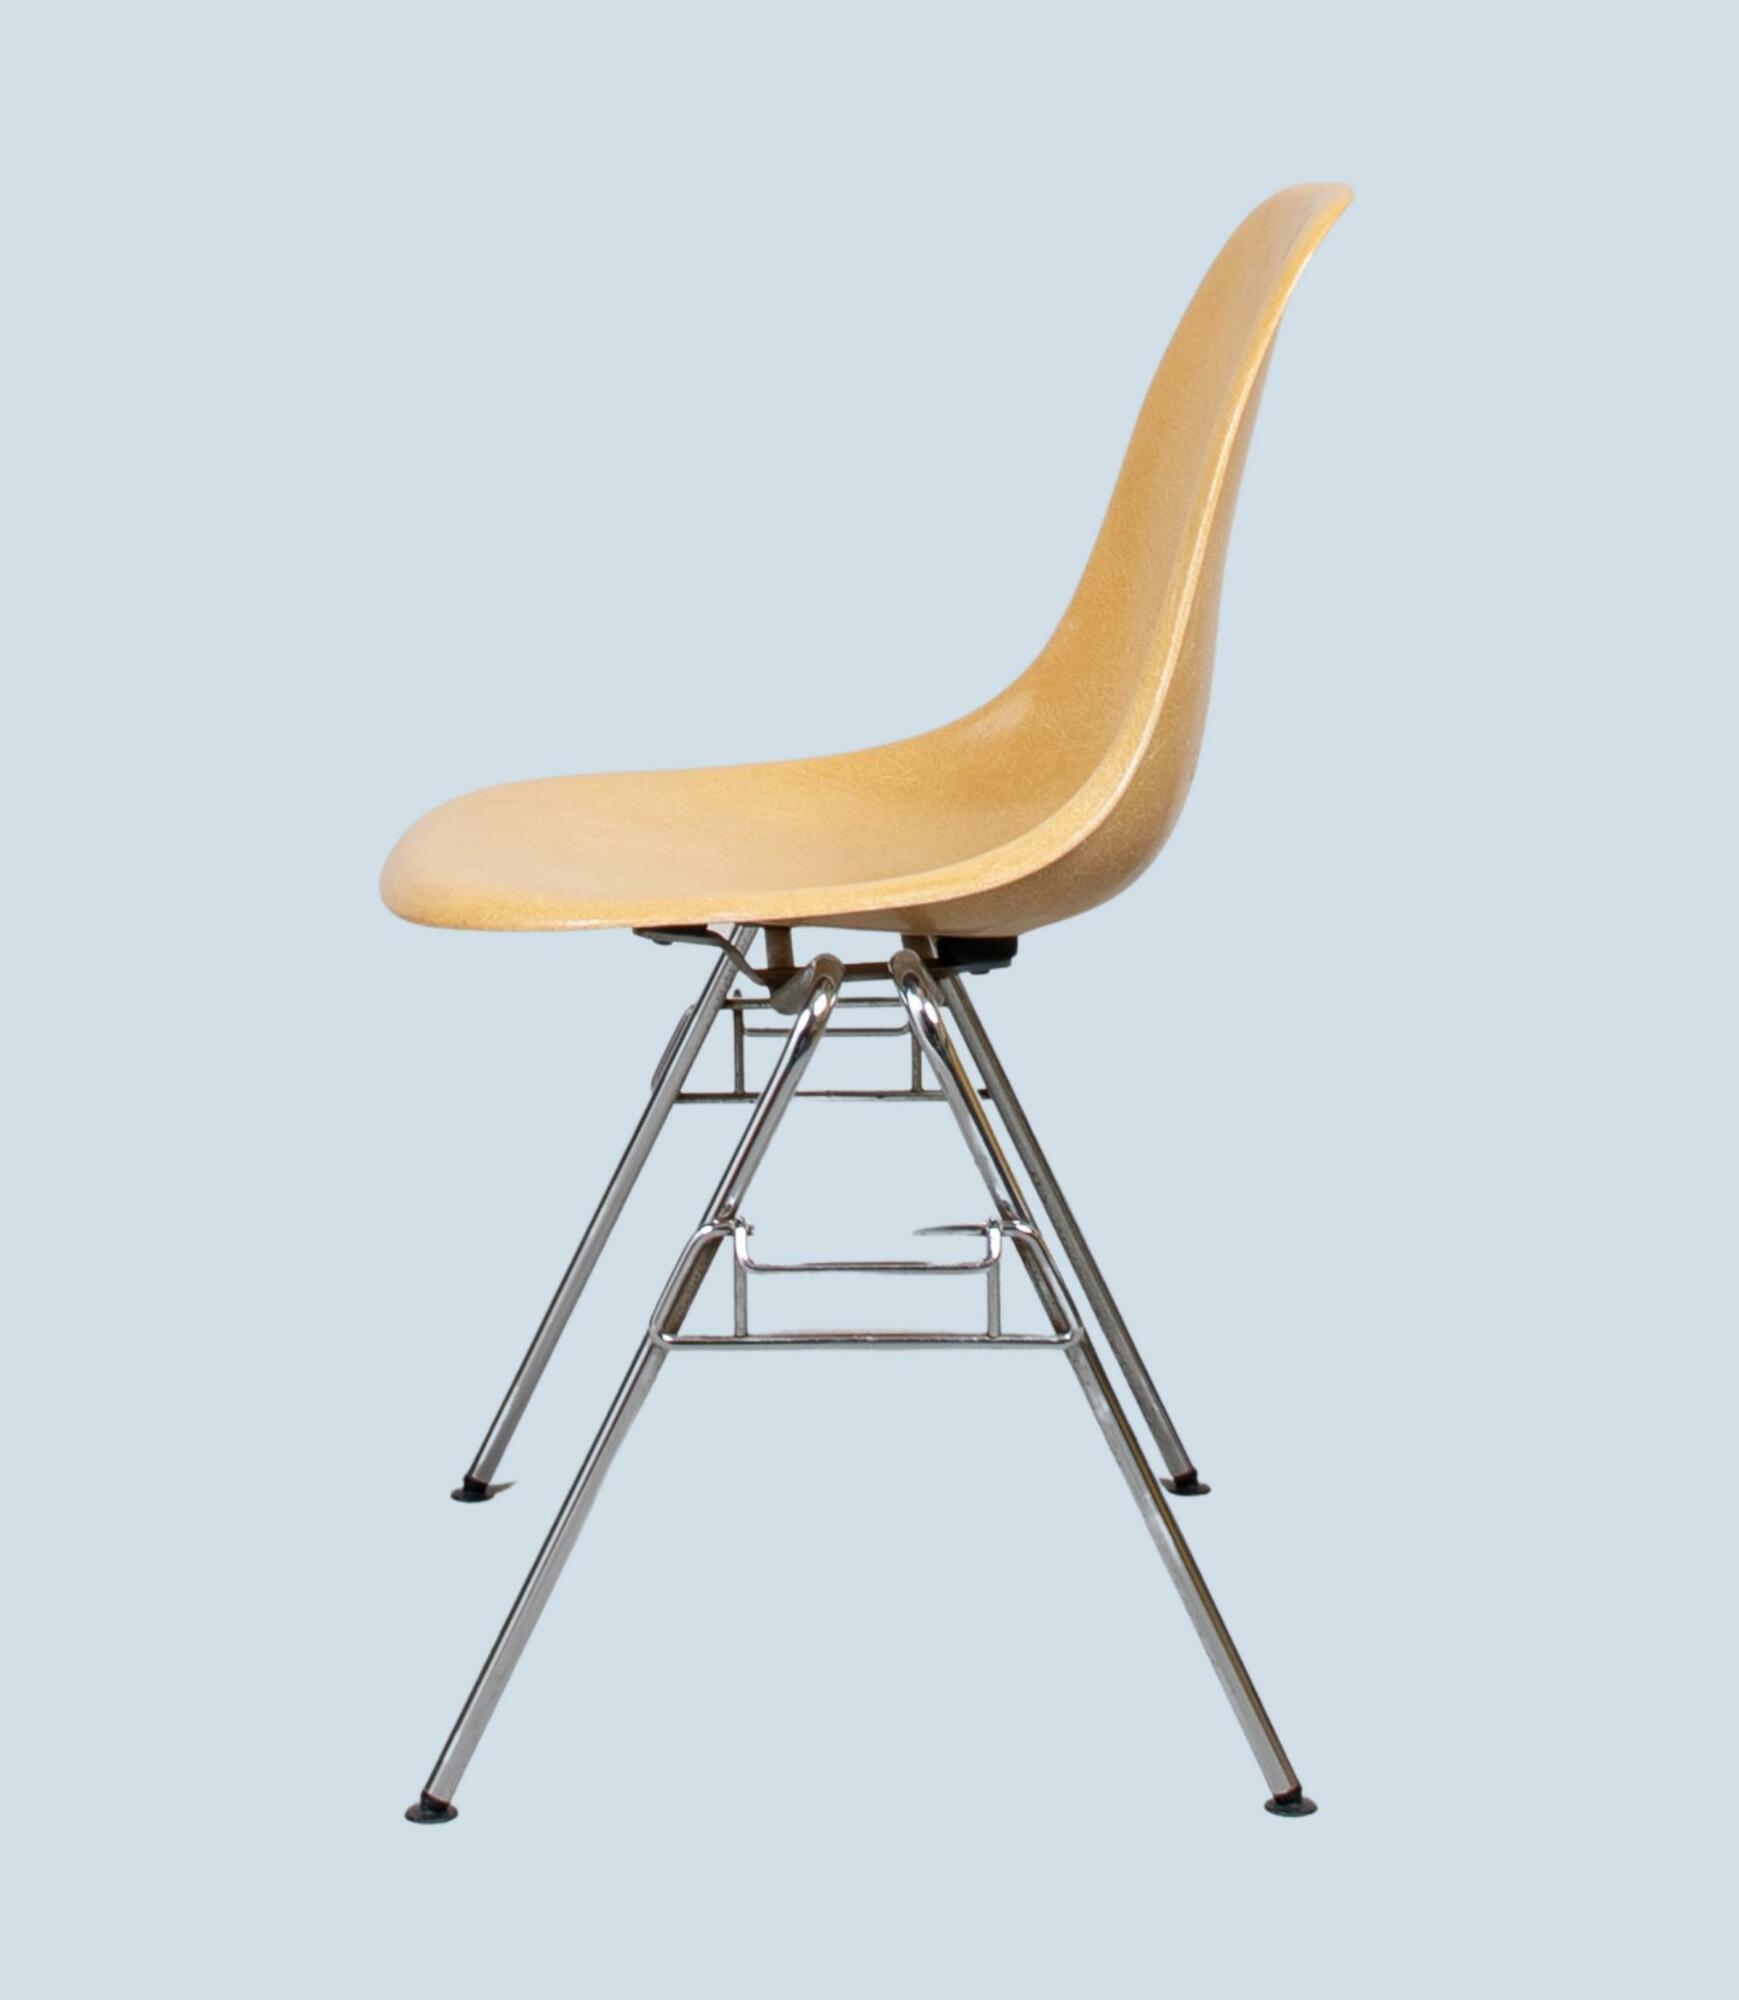 Eames Fiberglass Side Chair by Herman Miller Ochre Light 0